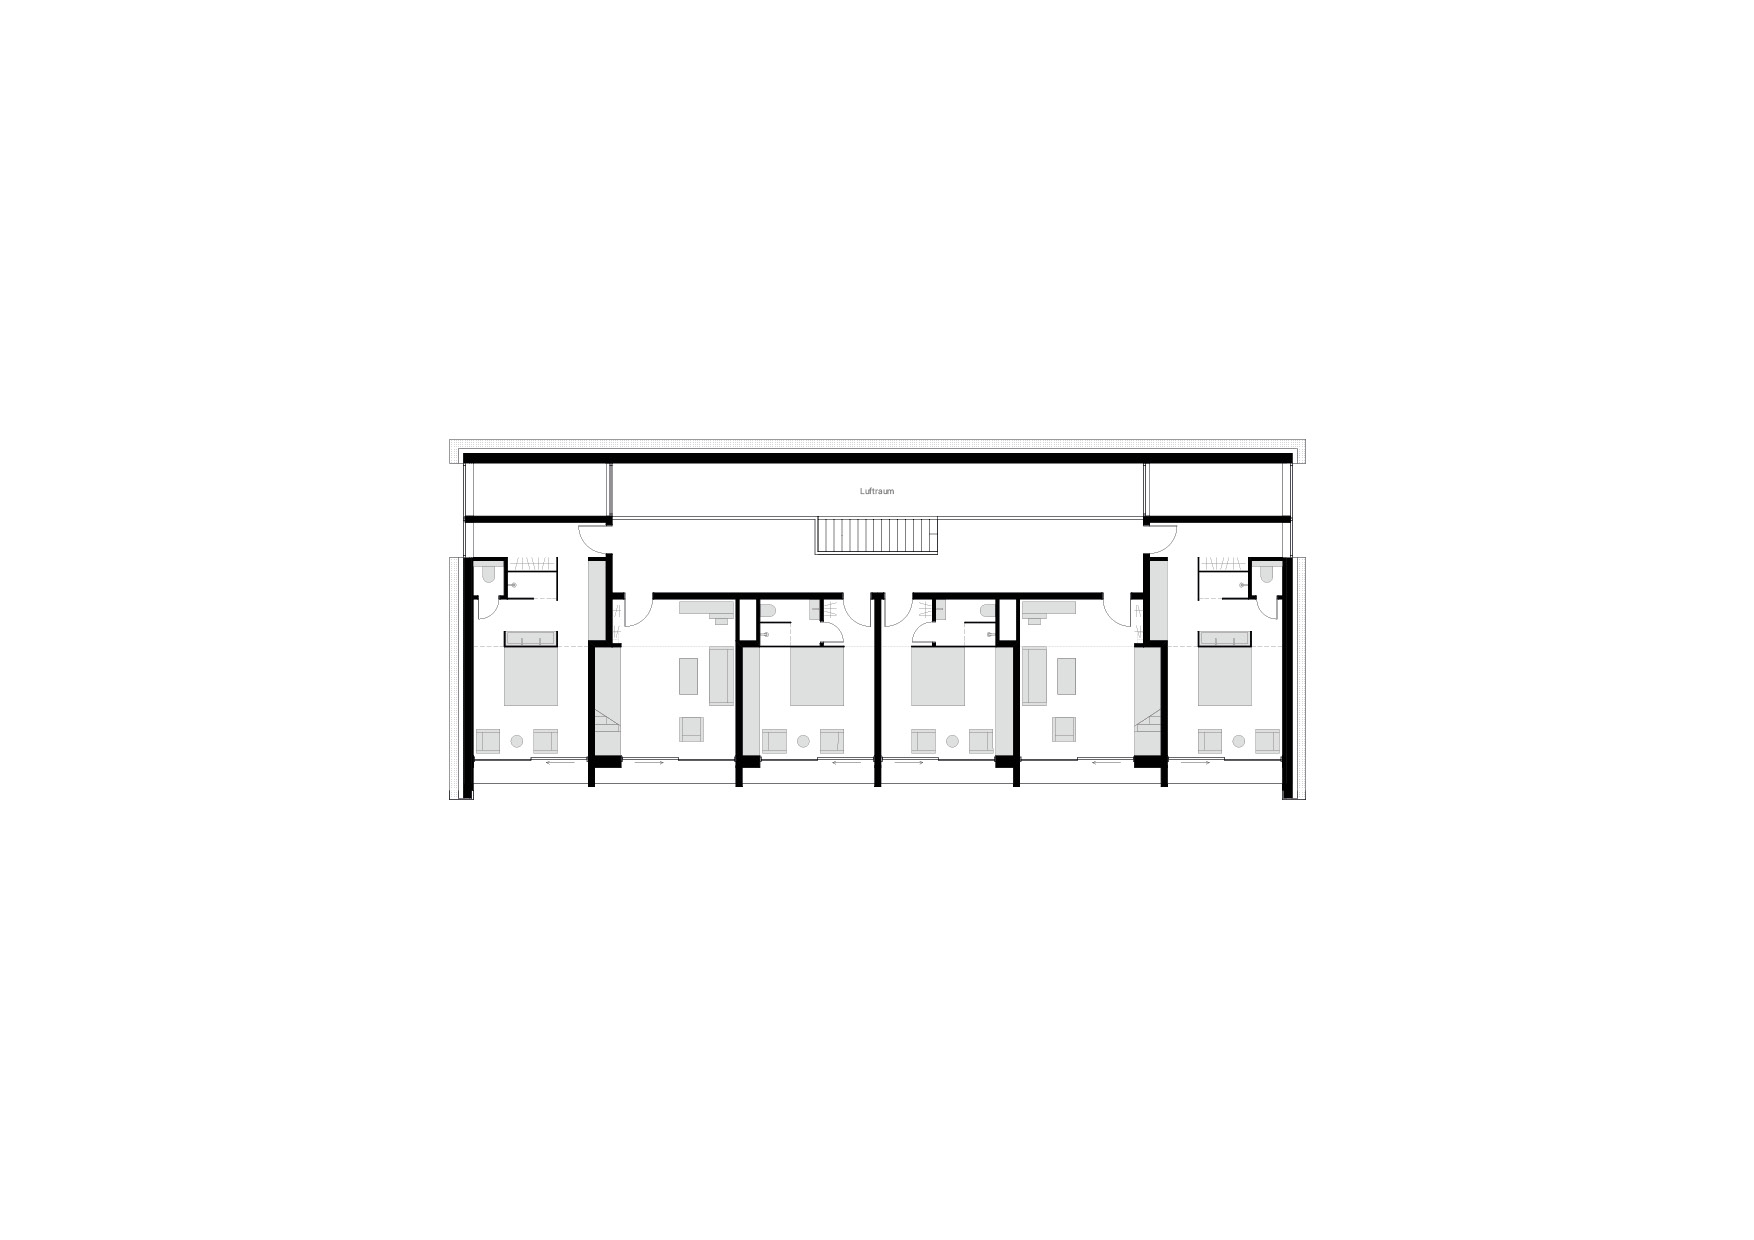 KUBIK Architektur - Studio für Architektur Berlin - architecture - Projekt - Hotel - Parkstudios - Grundriss